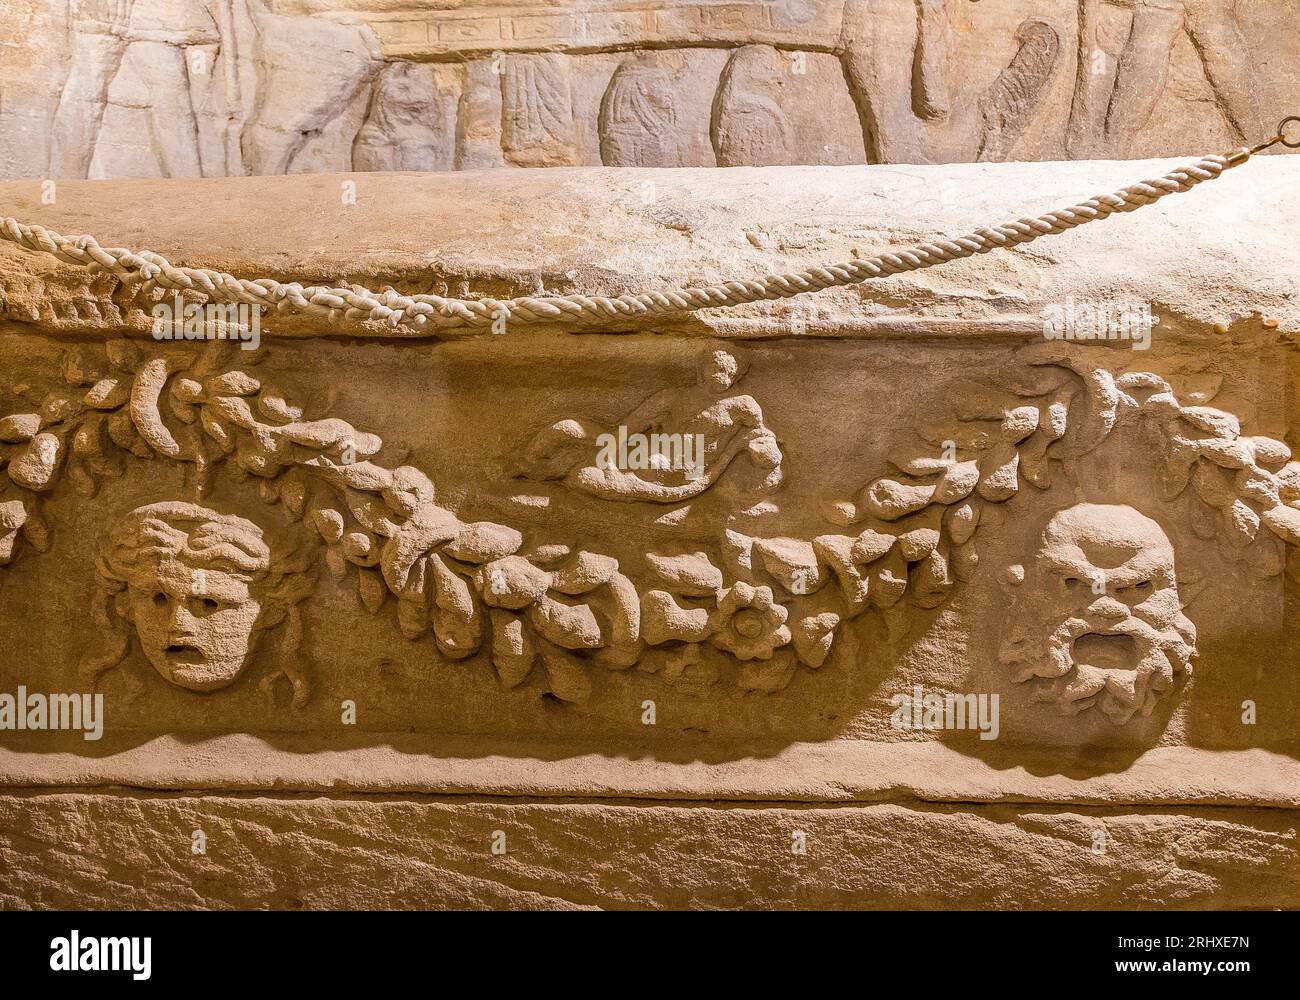 Necropoli di Kom el Shogafa, tomba principale, sala principale, nicchia centrale, vista generale: Dettaglio del sarcofago, maschera di Medusa e sileno. Foto Stock